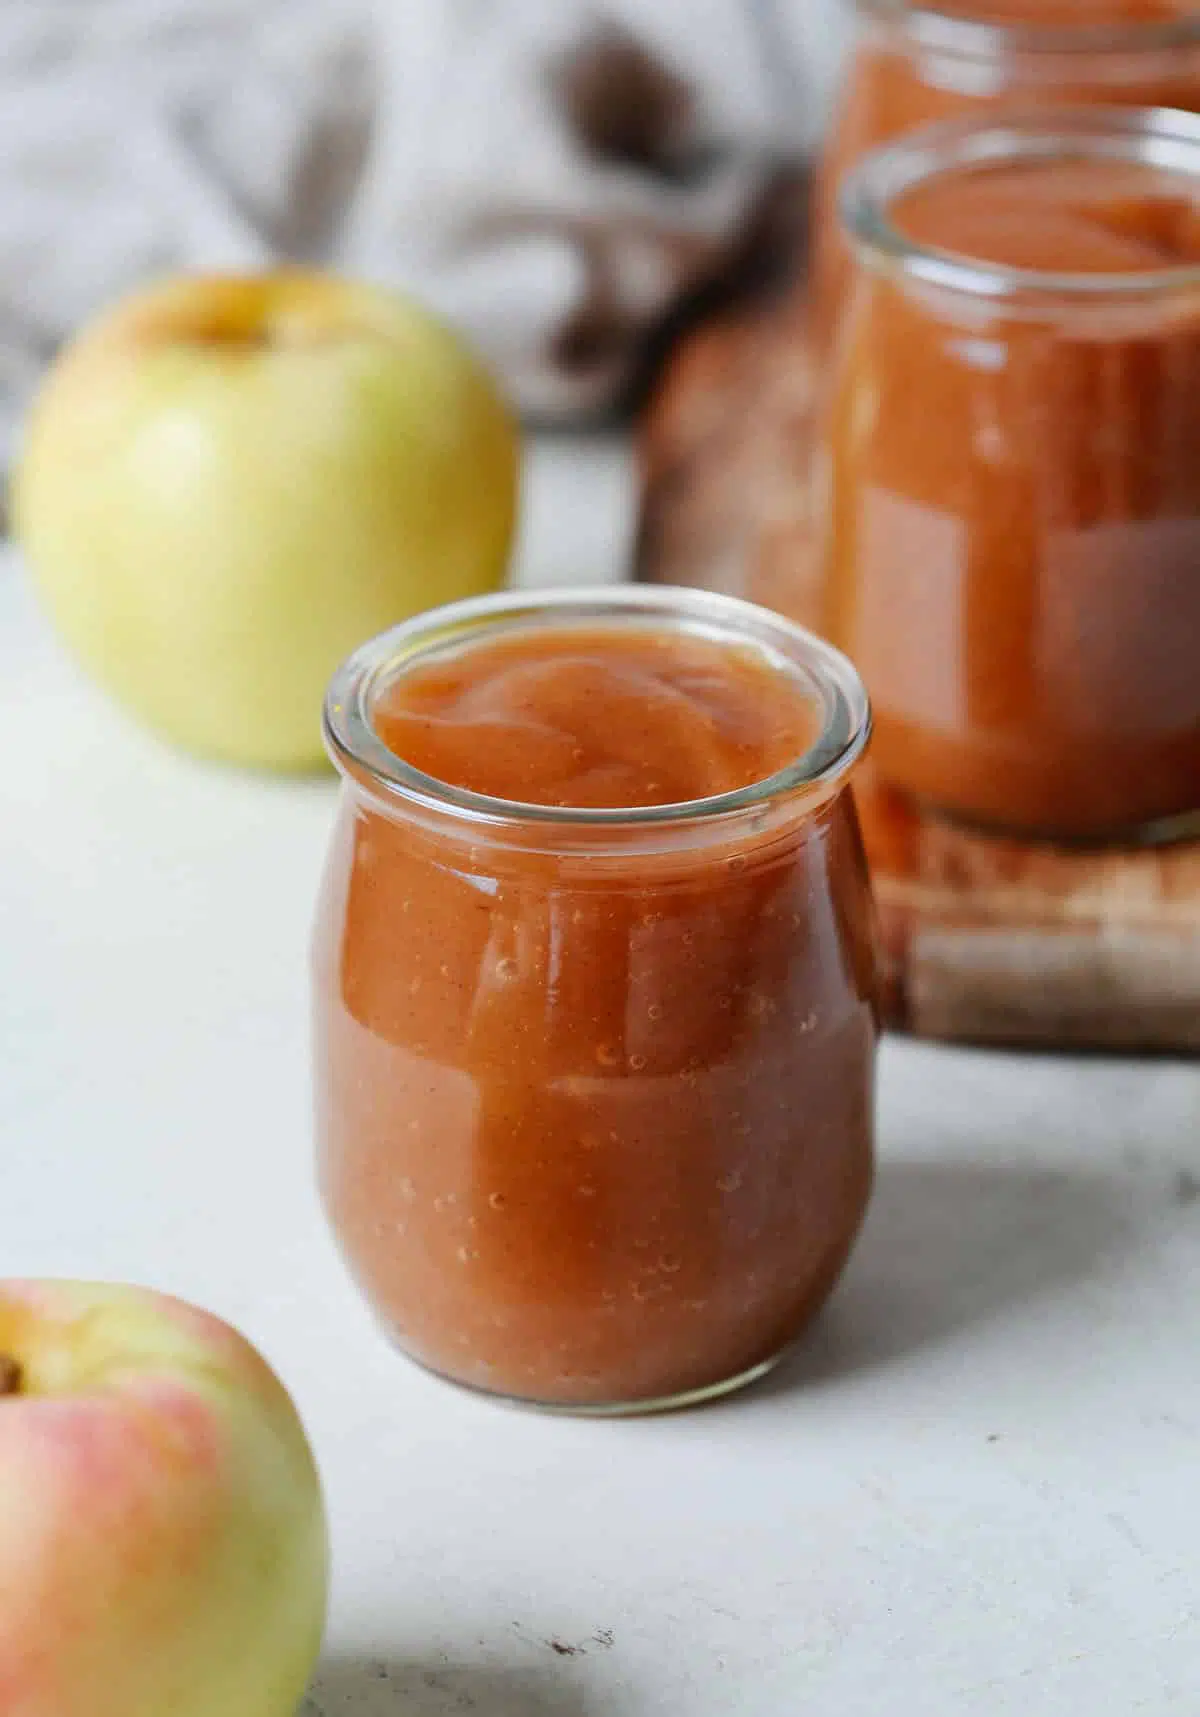 applesauce inside of a glass jar